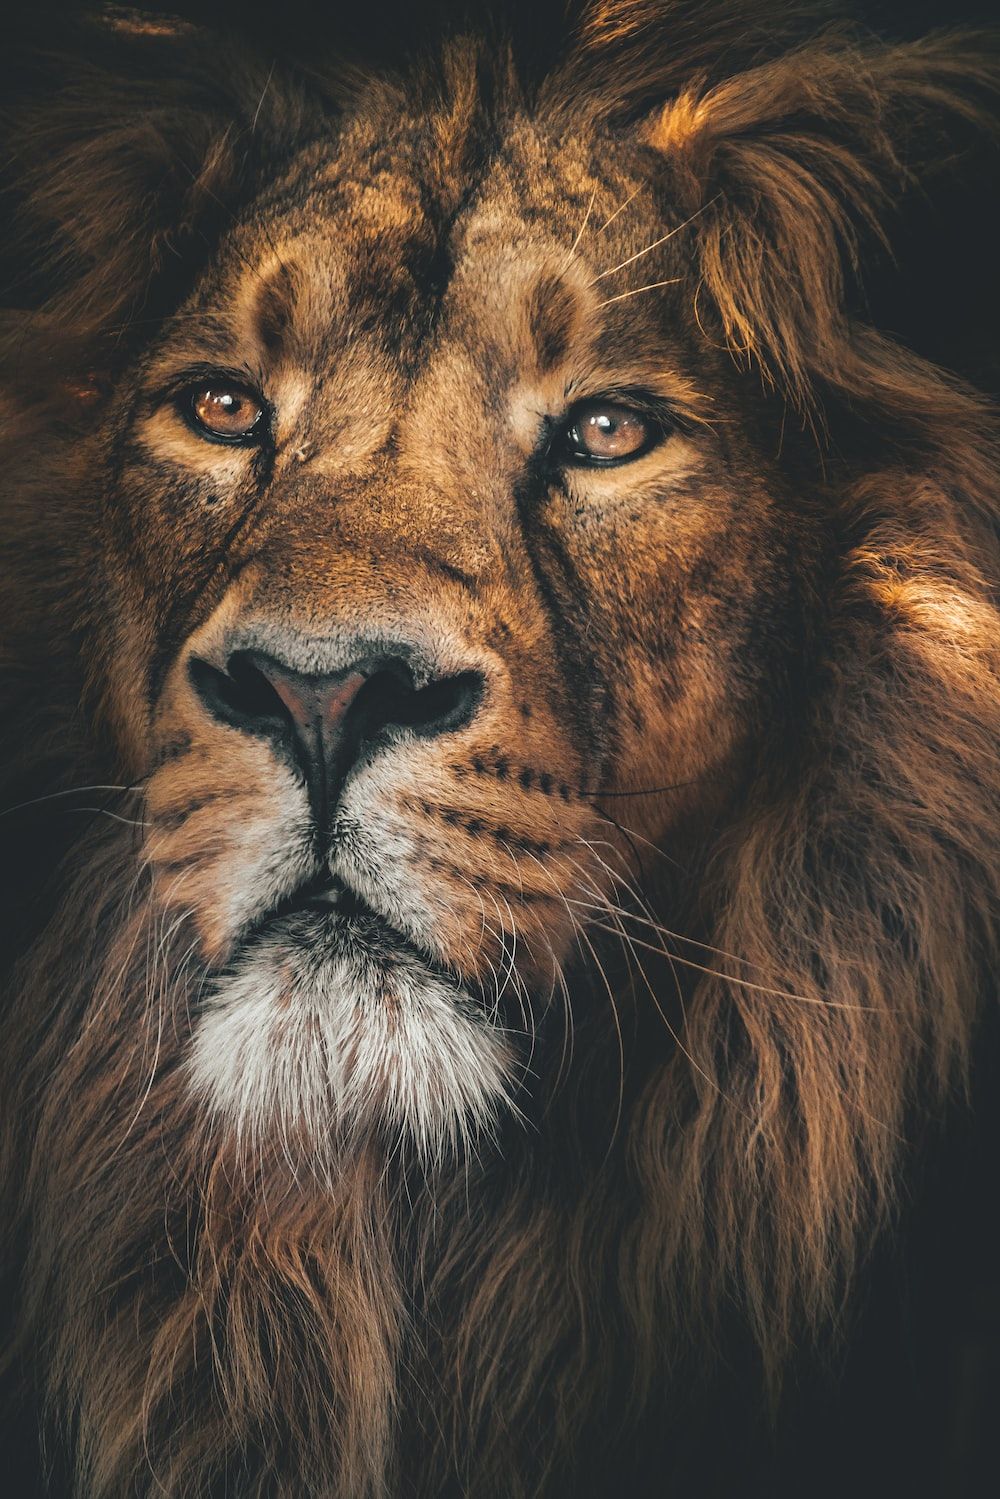  Löwen Hintergrundbild 1000x1499. Foto zum Thema Brauner Löwe mit weißen Augen